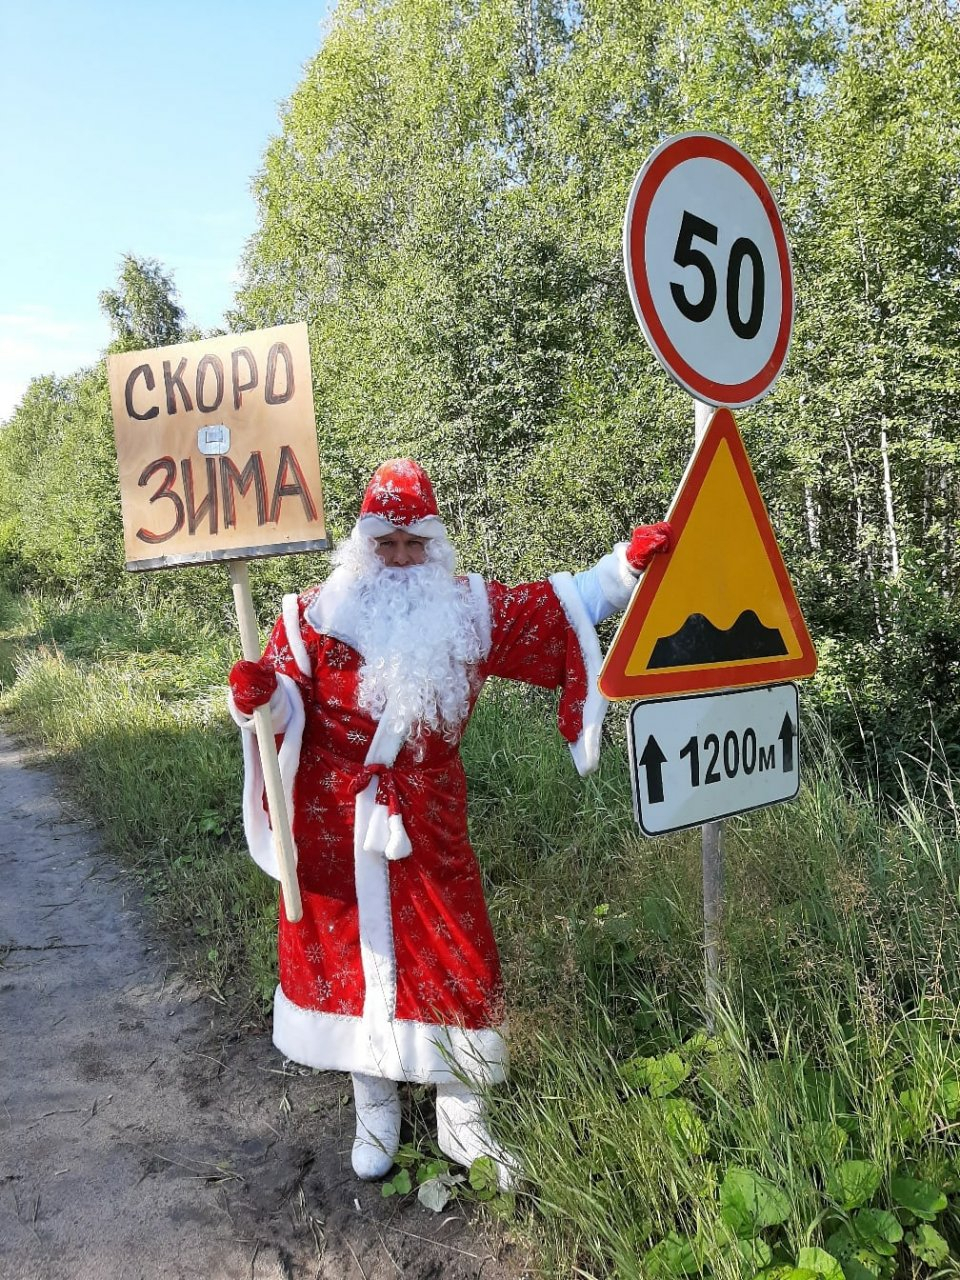 Человек в костюме Деда Мороза требует капитального ремонта дороги под Ухтой